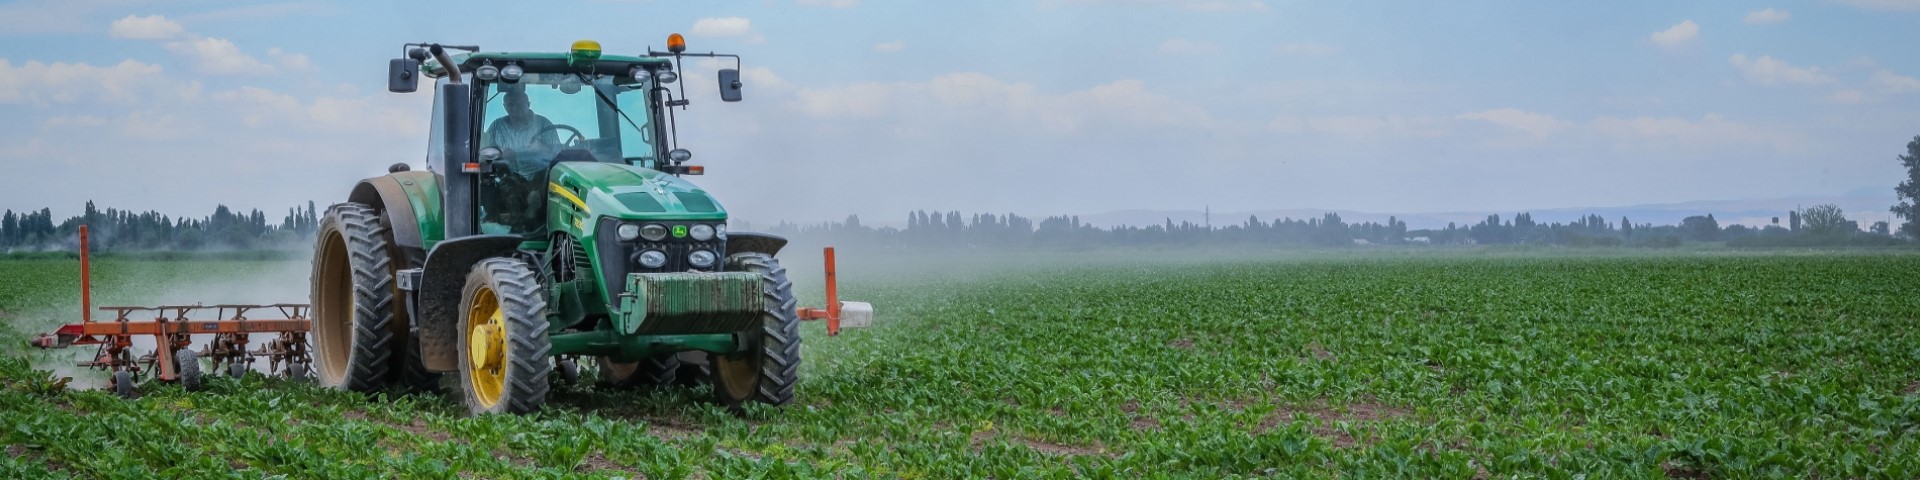 Ein Traktor bewässert ein landwirtschaftlich genutztes Feld.